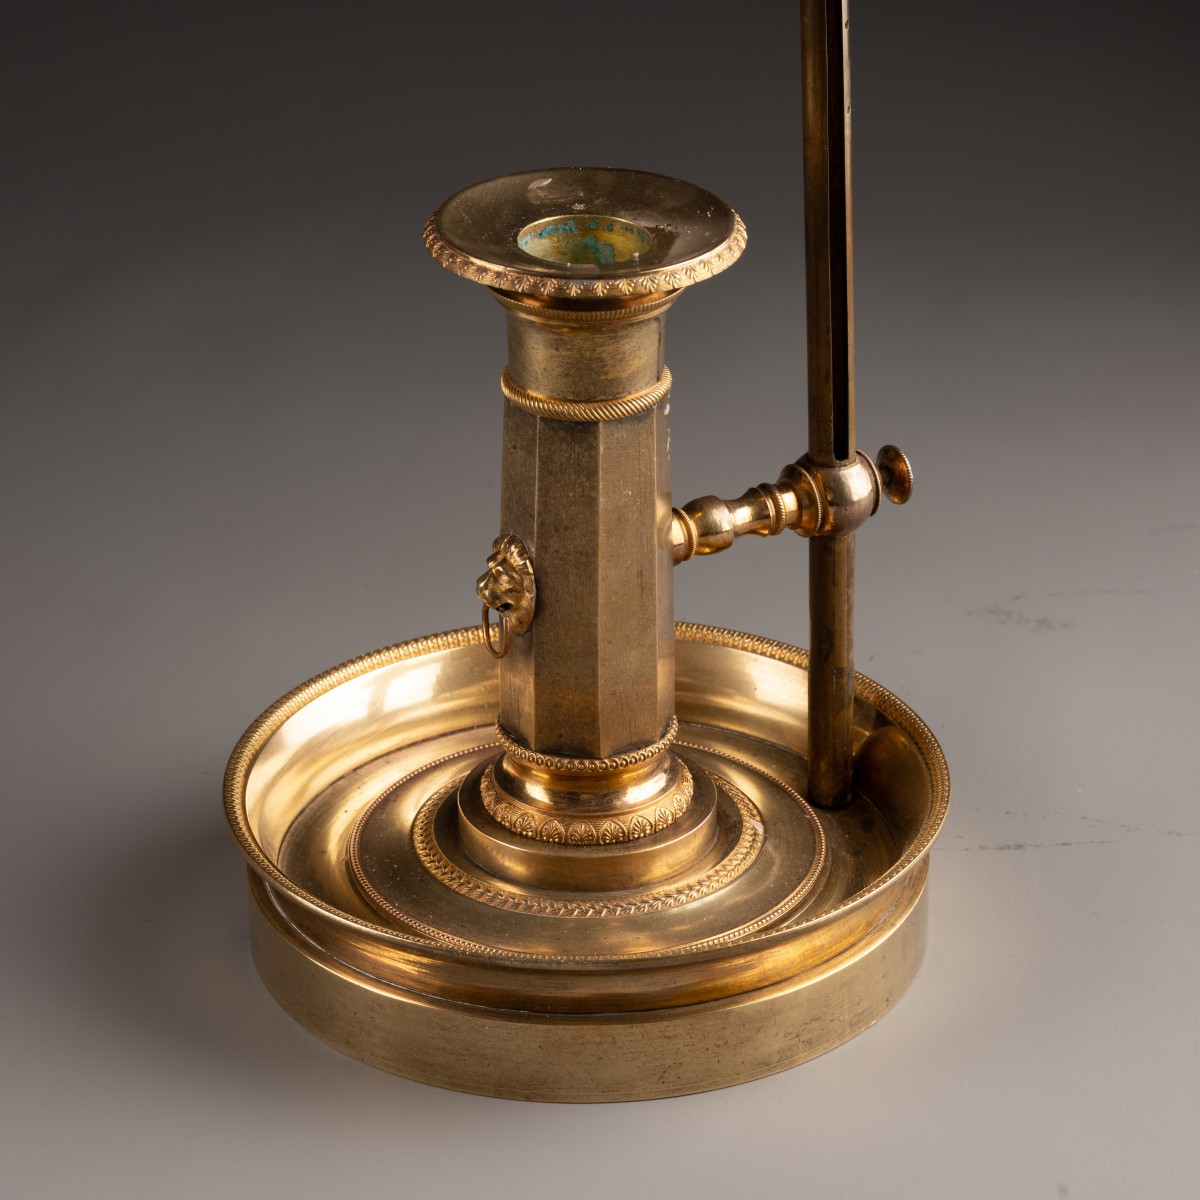 An Empire gilt-bronze candlestick with a mechanism - Ref.104576